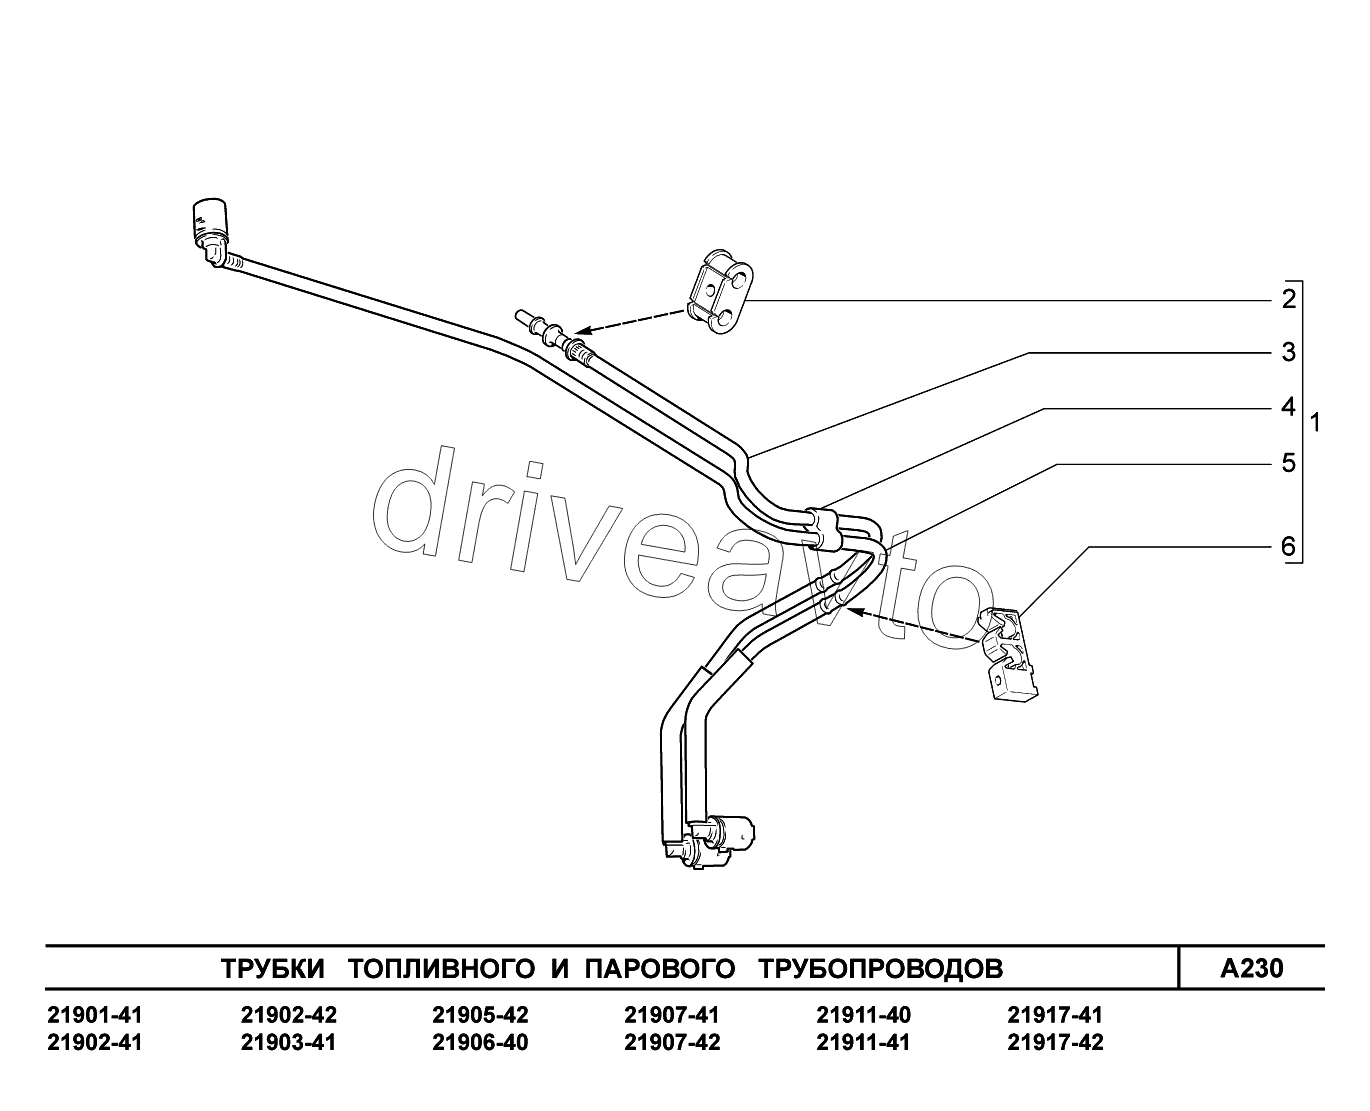 A230. Трубки топливного и парового трубопроводов